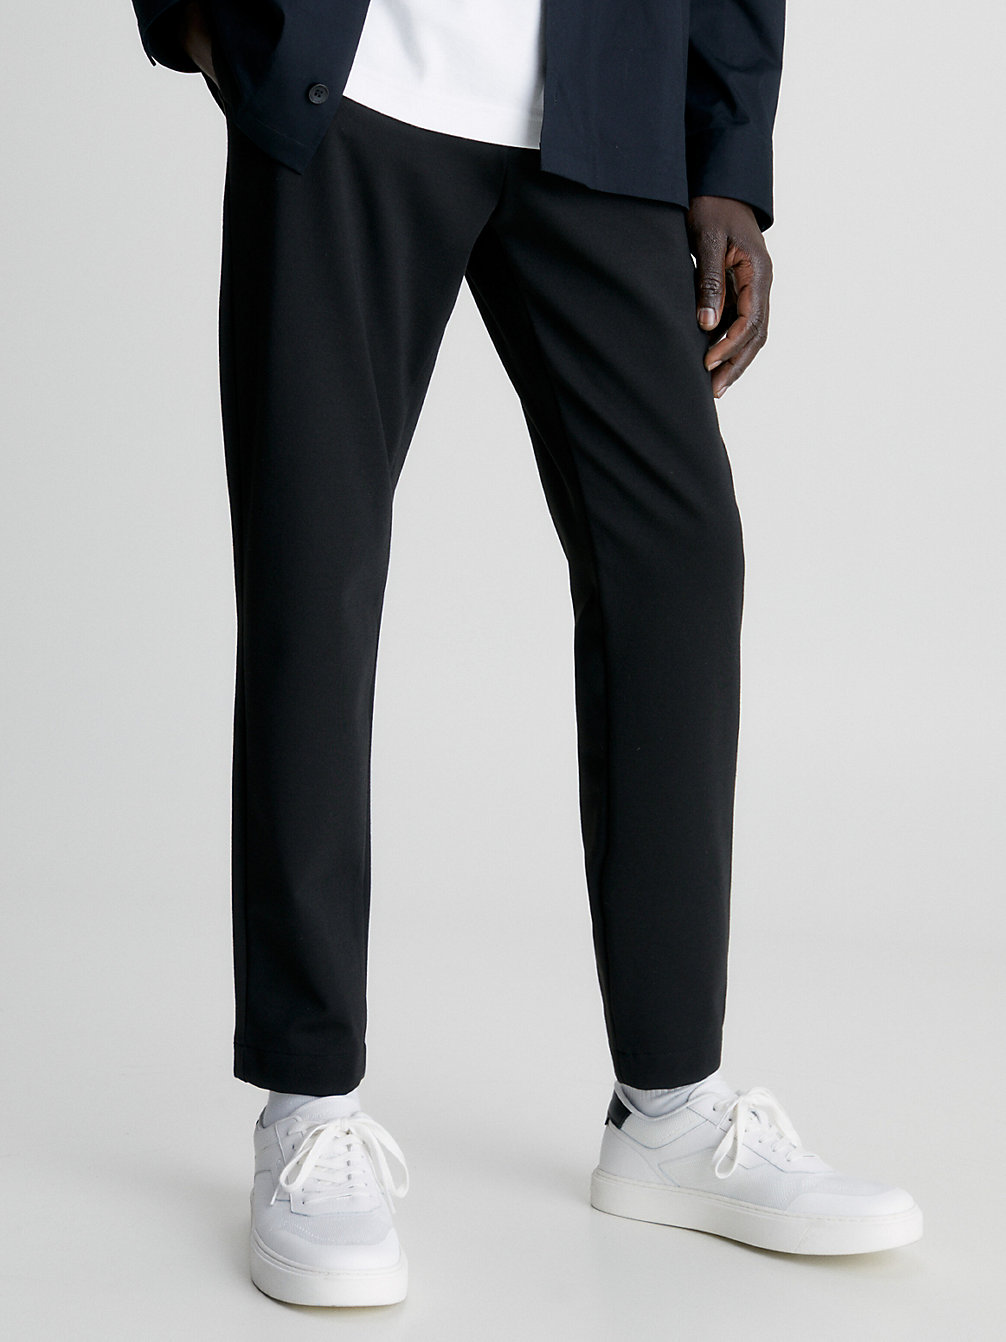 CK BLACK Pantalon Fuselé Court undefined hommes Calvin Klein